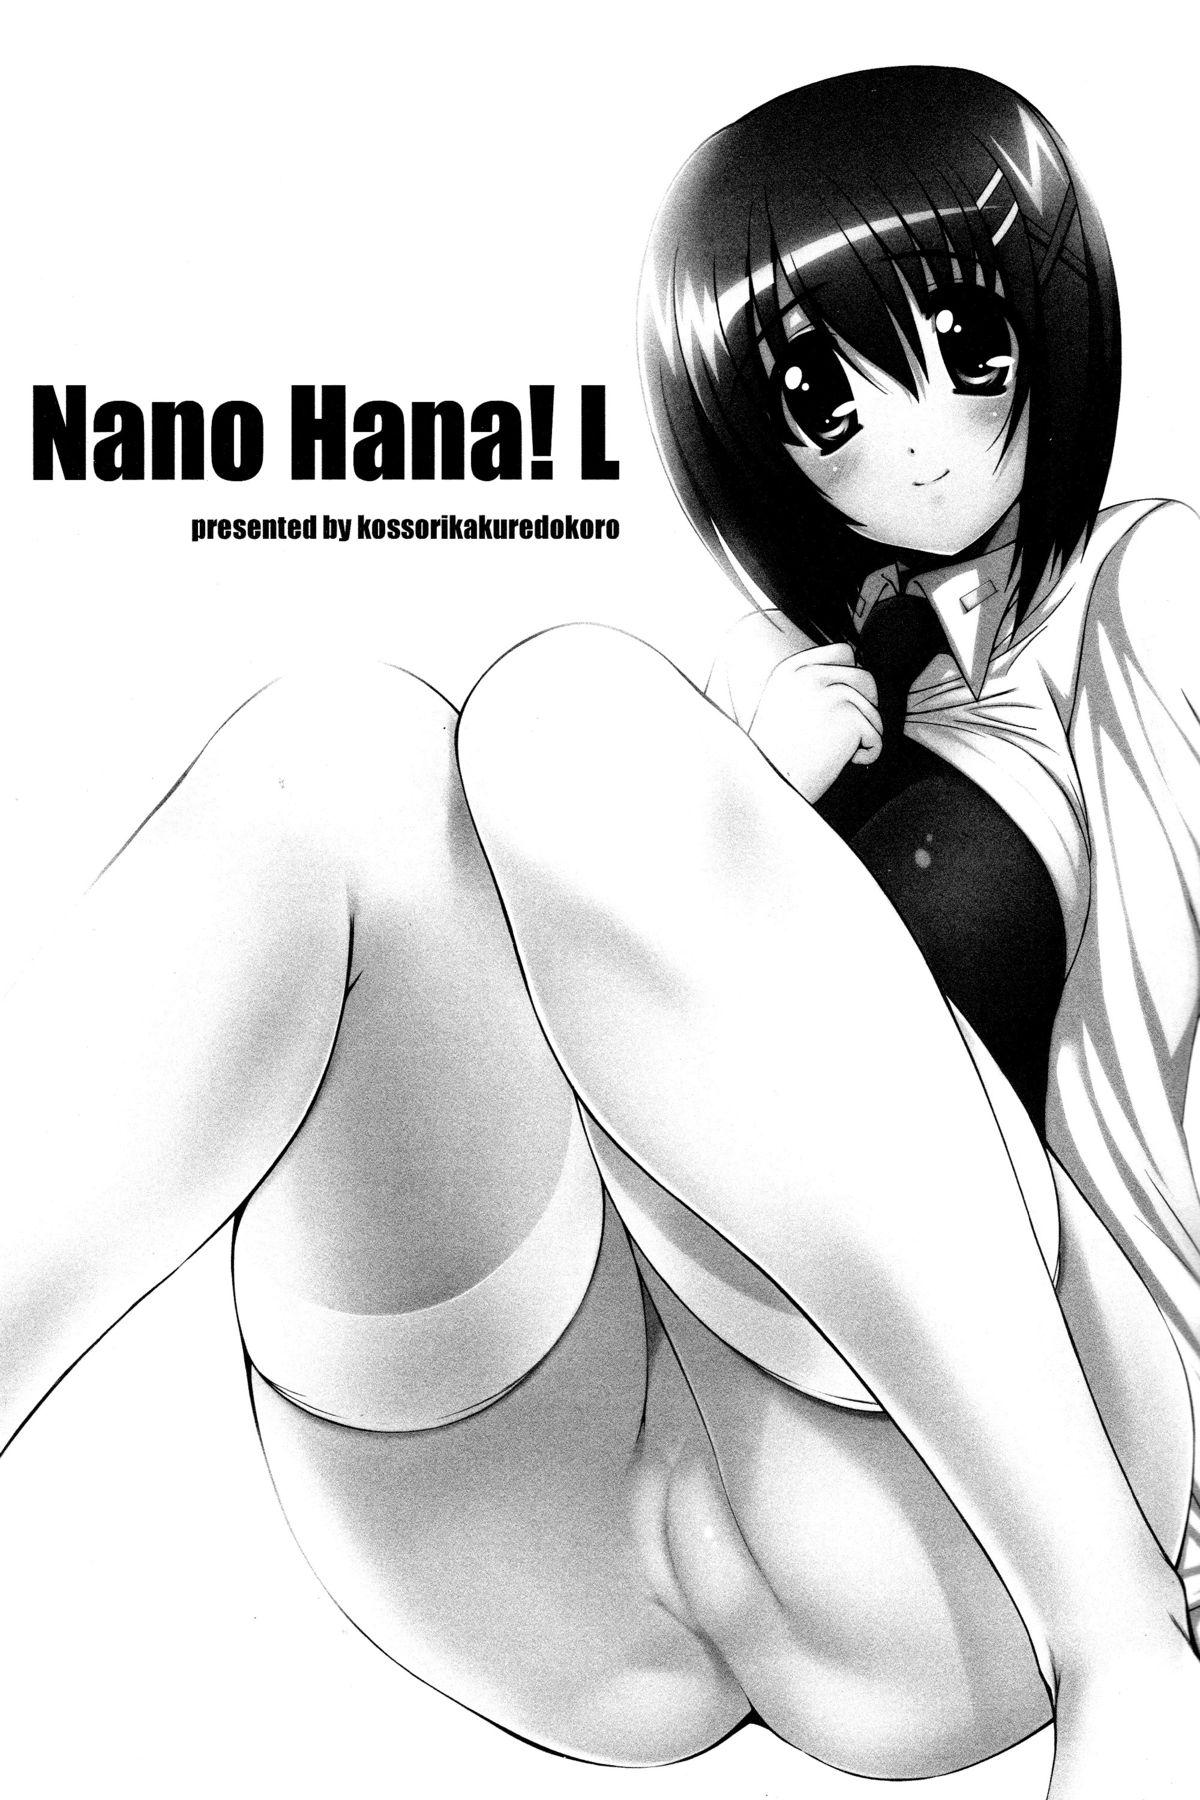 Nano Hana! L 1